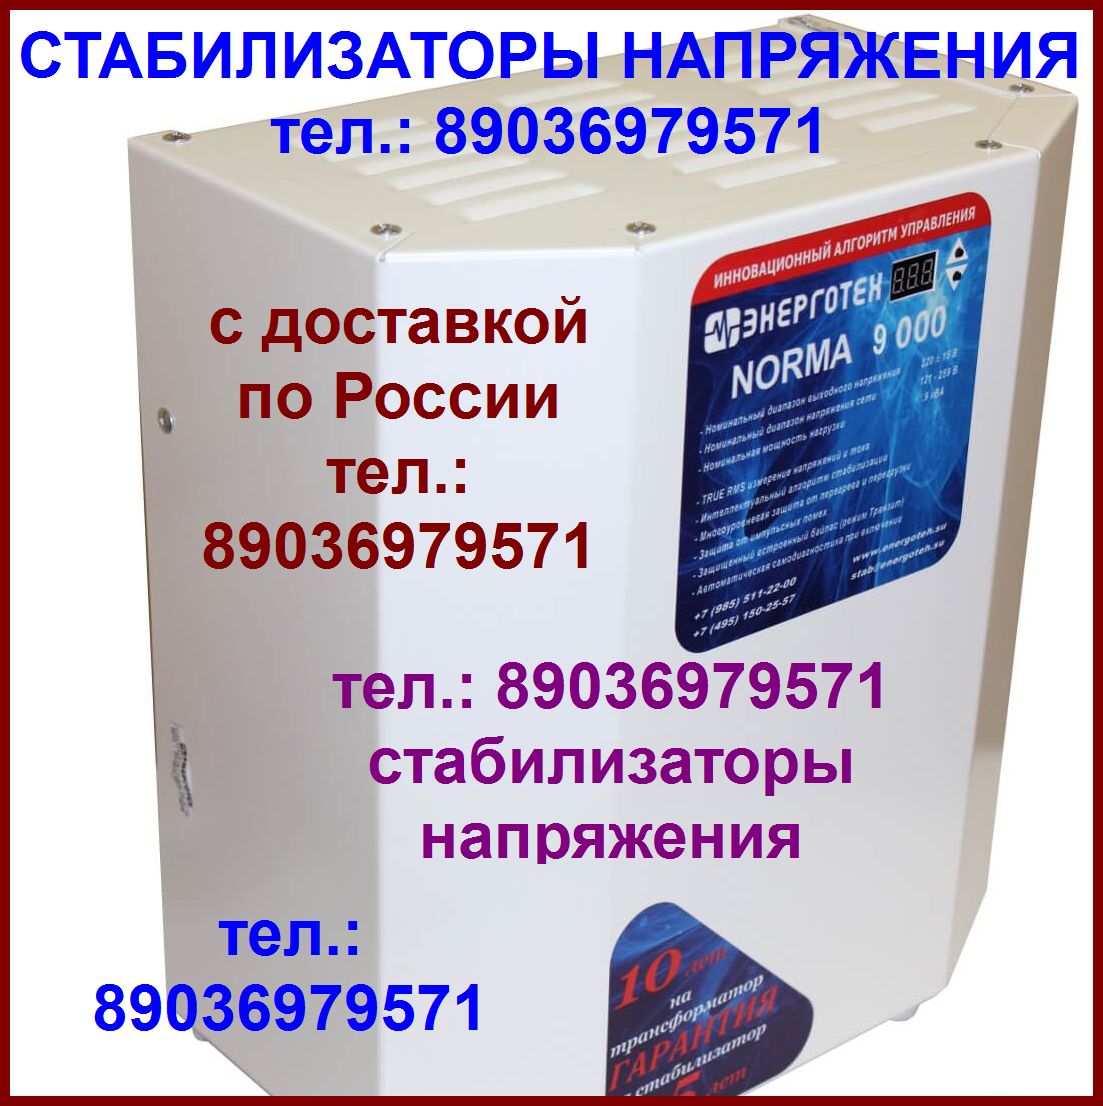 Ремень для pioneer pl-j210 пассик в городе Москва, фото 2, телефон продавца: +7 (903) 697-95-71